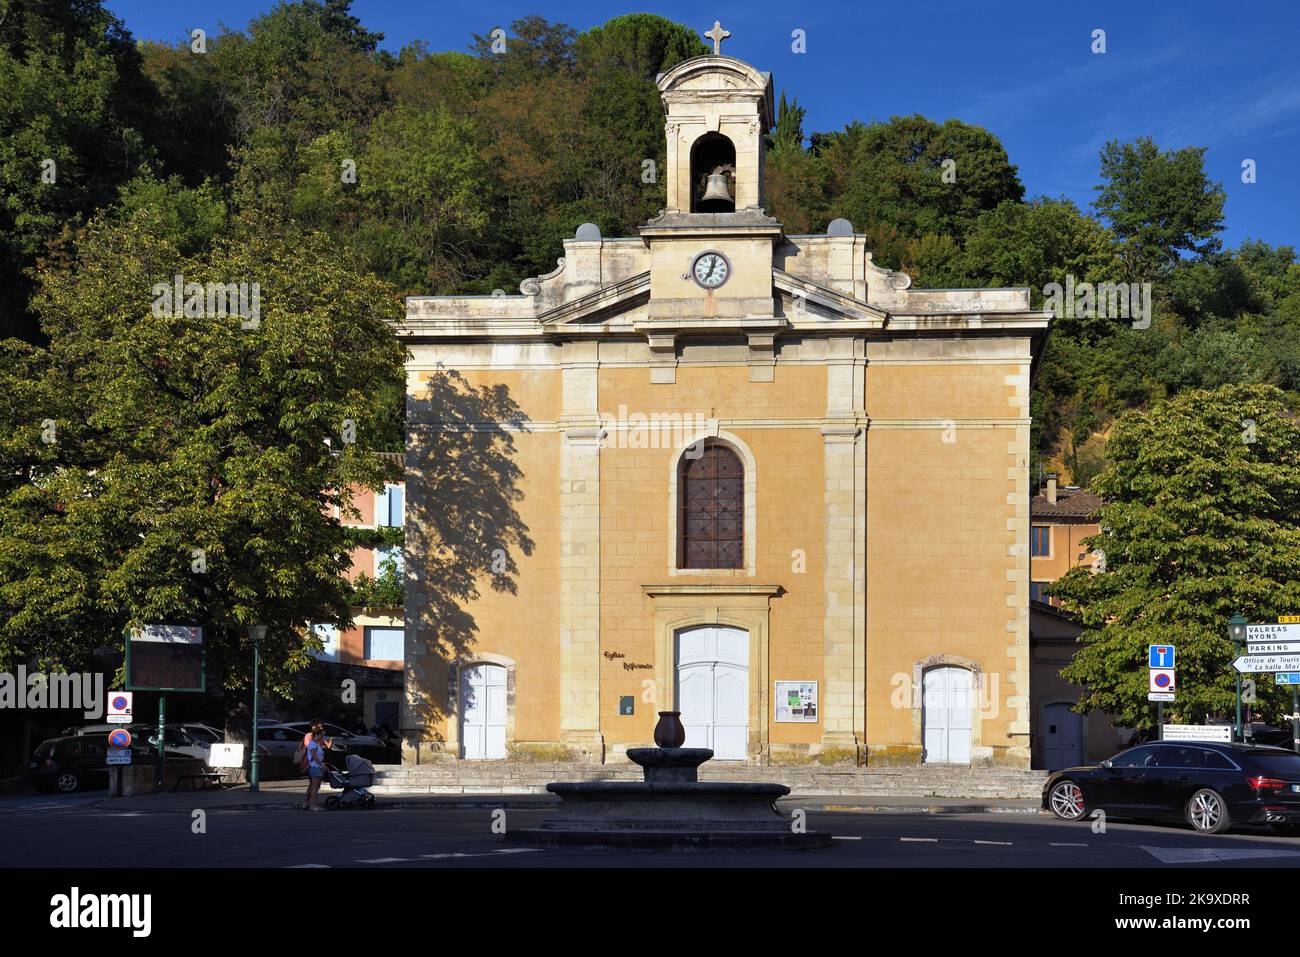 Der neoklassizistische Stil der evangelischen Kirche von c19., Temple Protestant de l'Eglise Unie, Dieulefit Drome Provence France Stockfoto